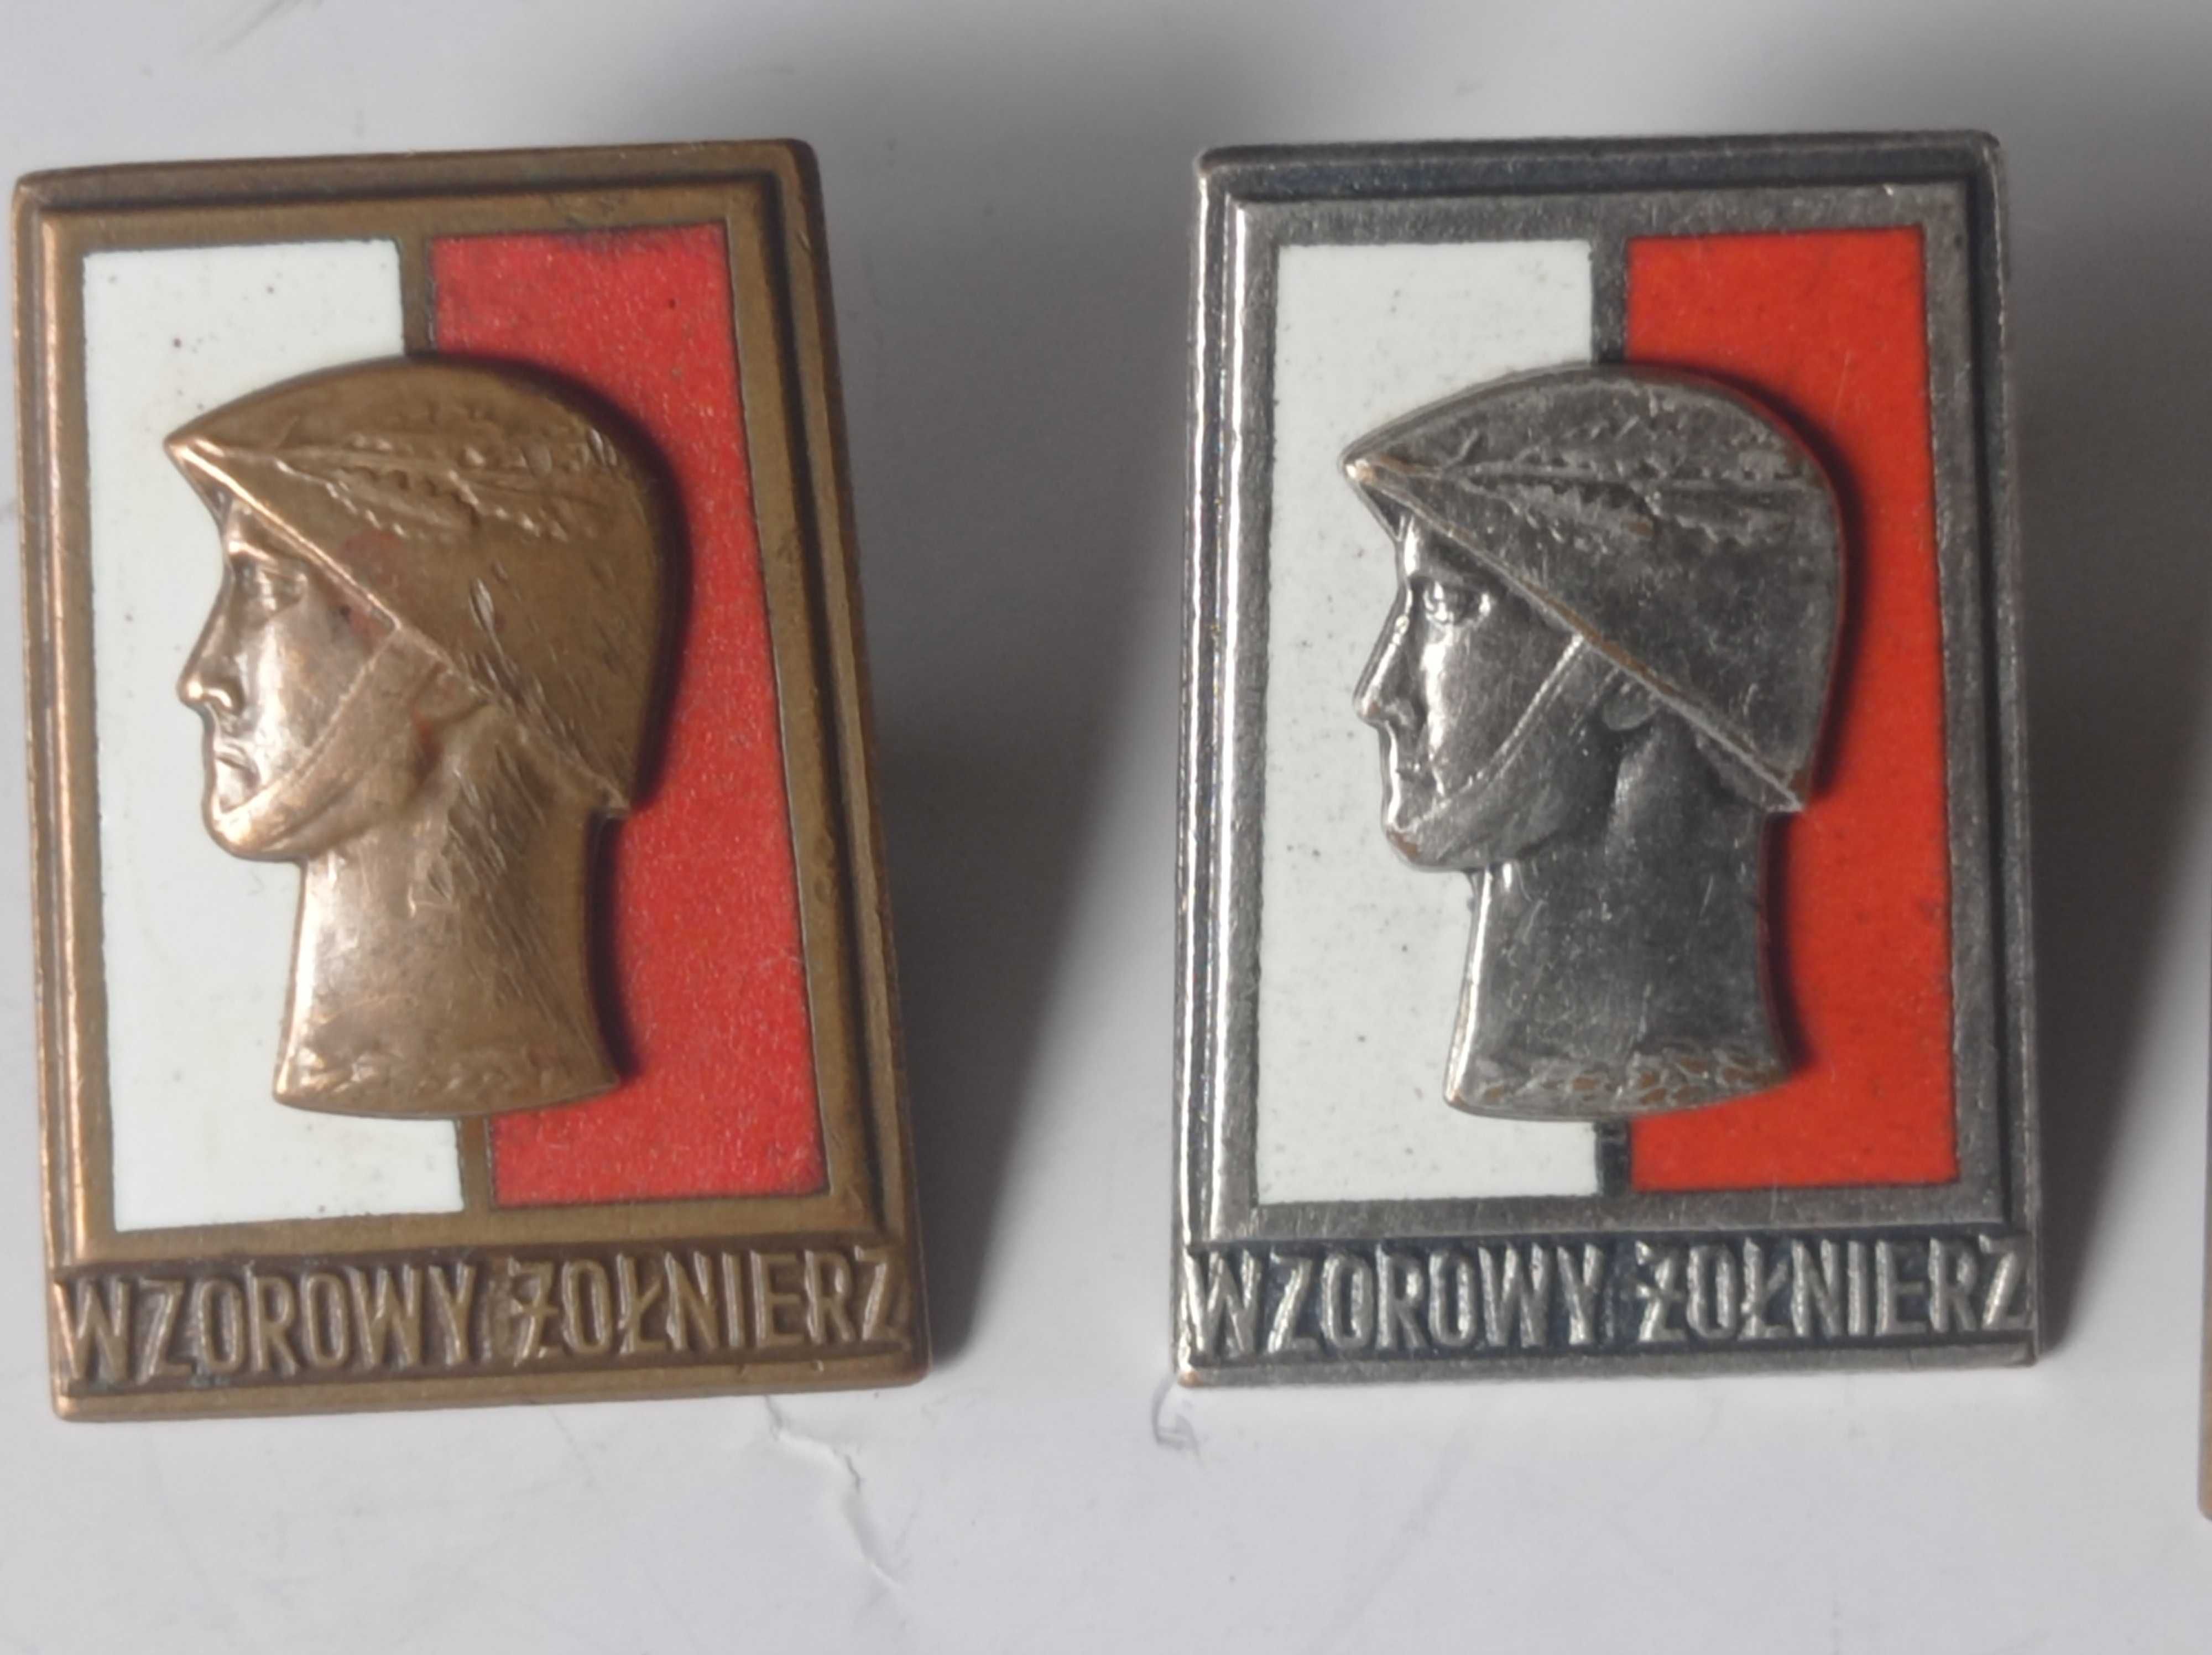 Wzorowy żołnierz x 3 - miniaturka 2 stopnia - oryginały -odznaki PRL.